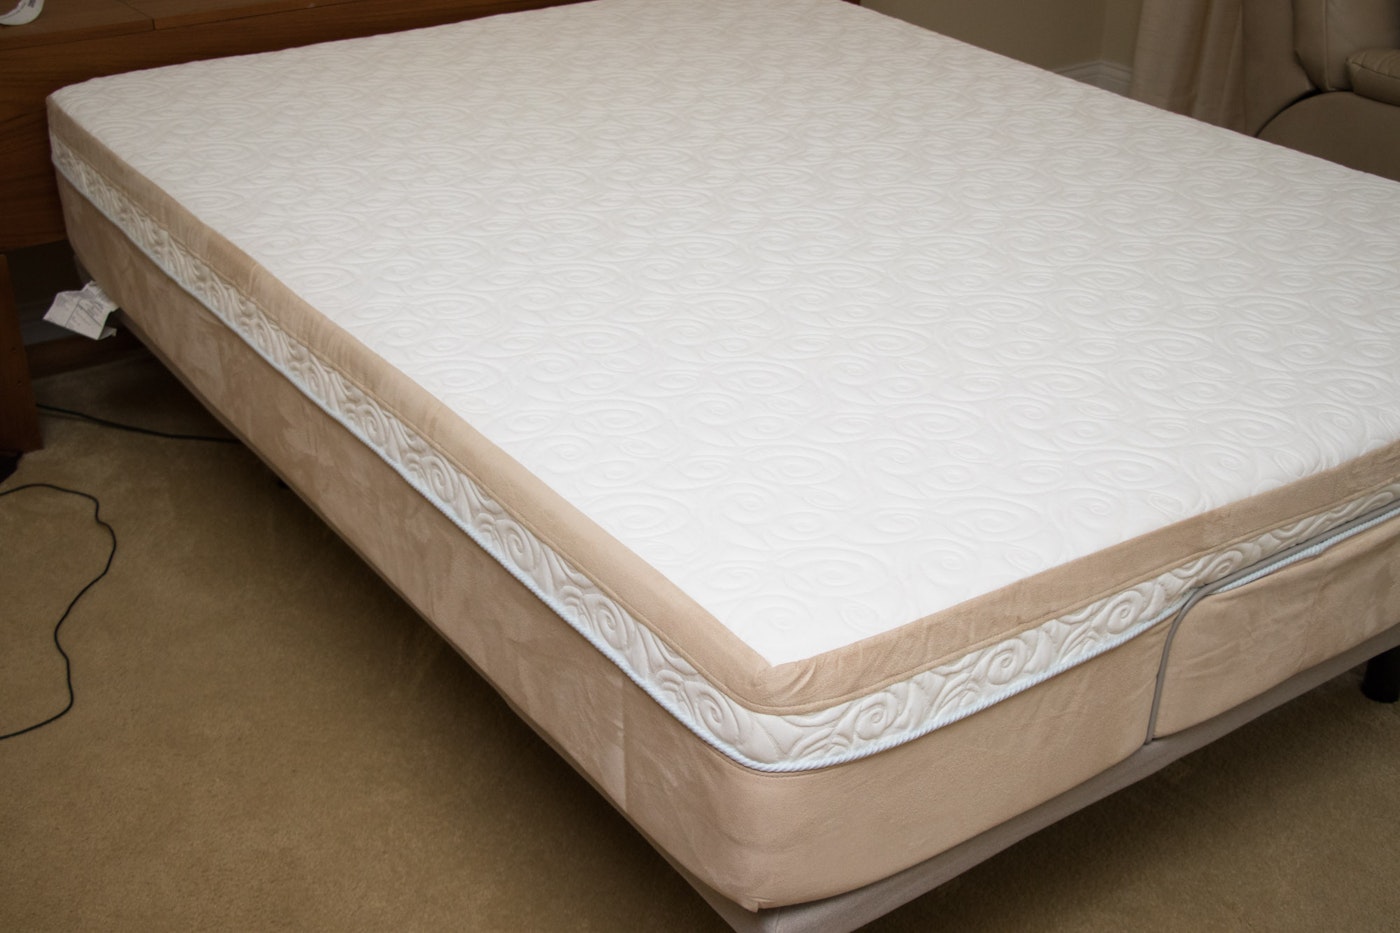 tempurpedic queen mattress firmness control system